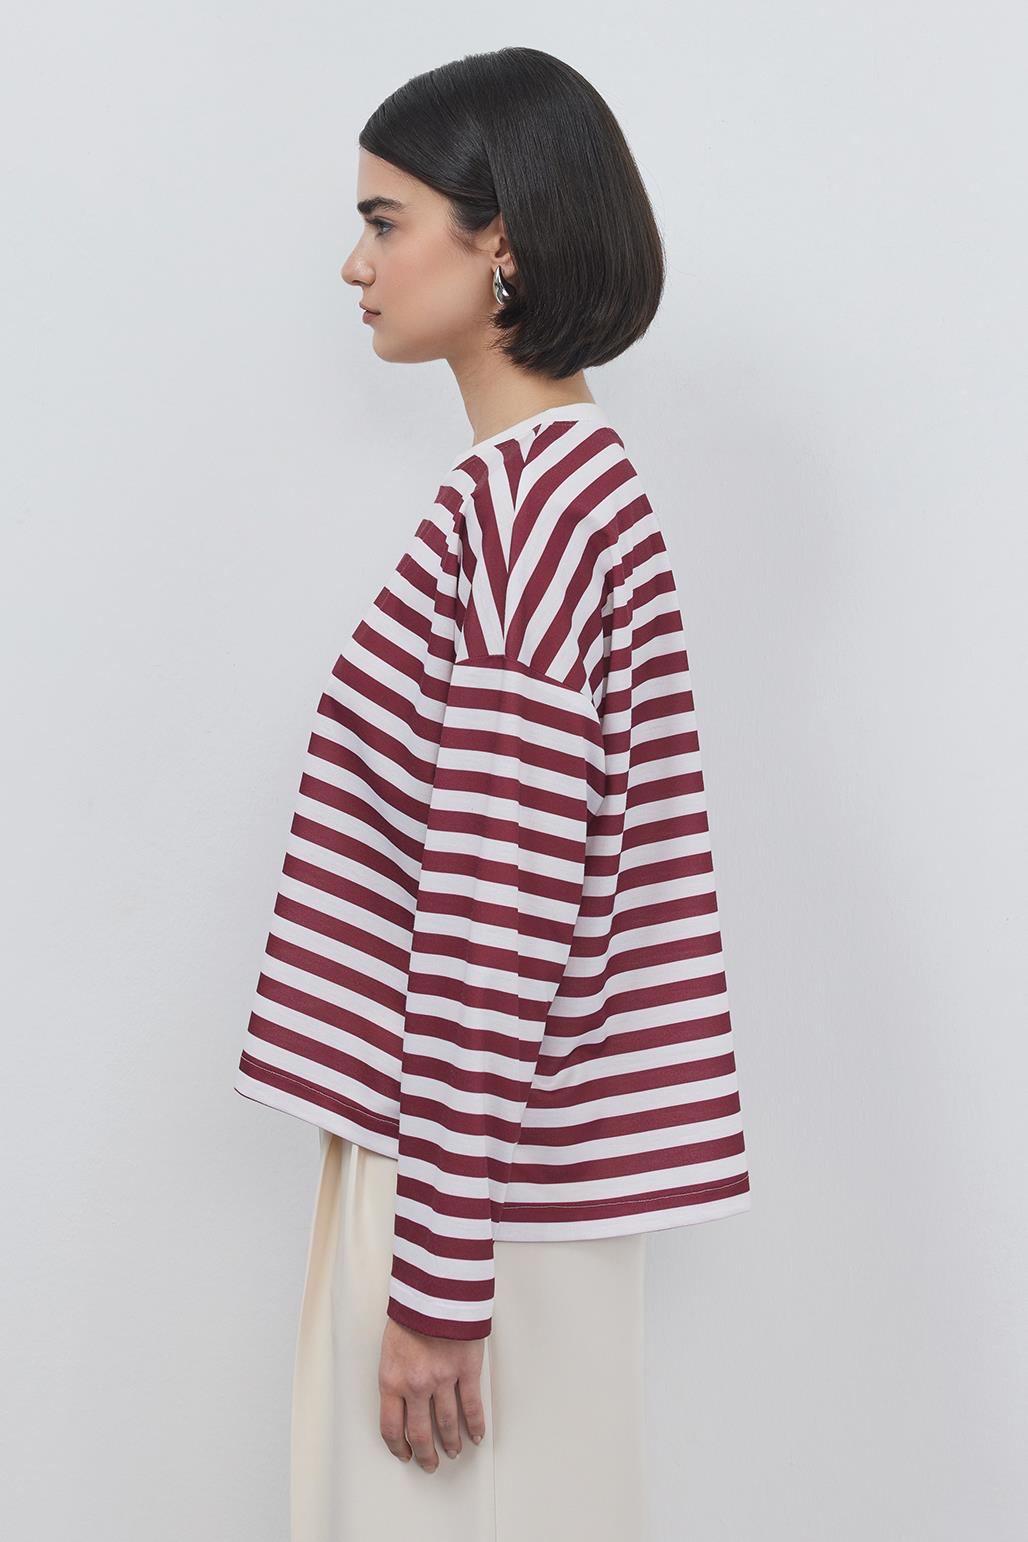 Striped Crop Sweatshirt Burgundy